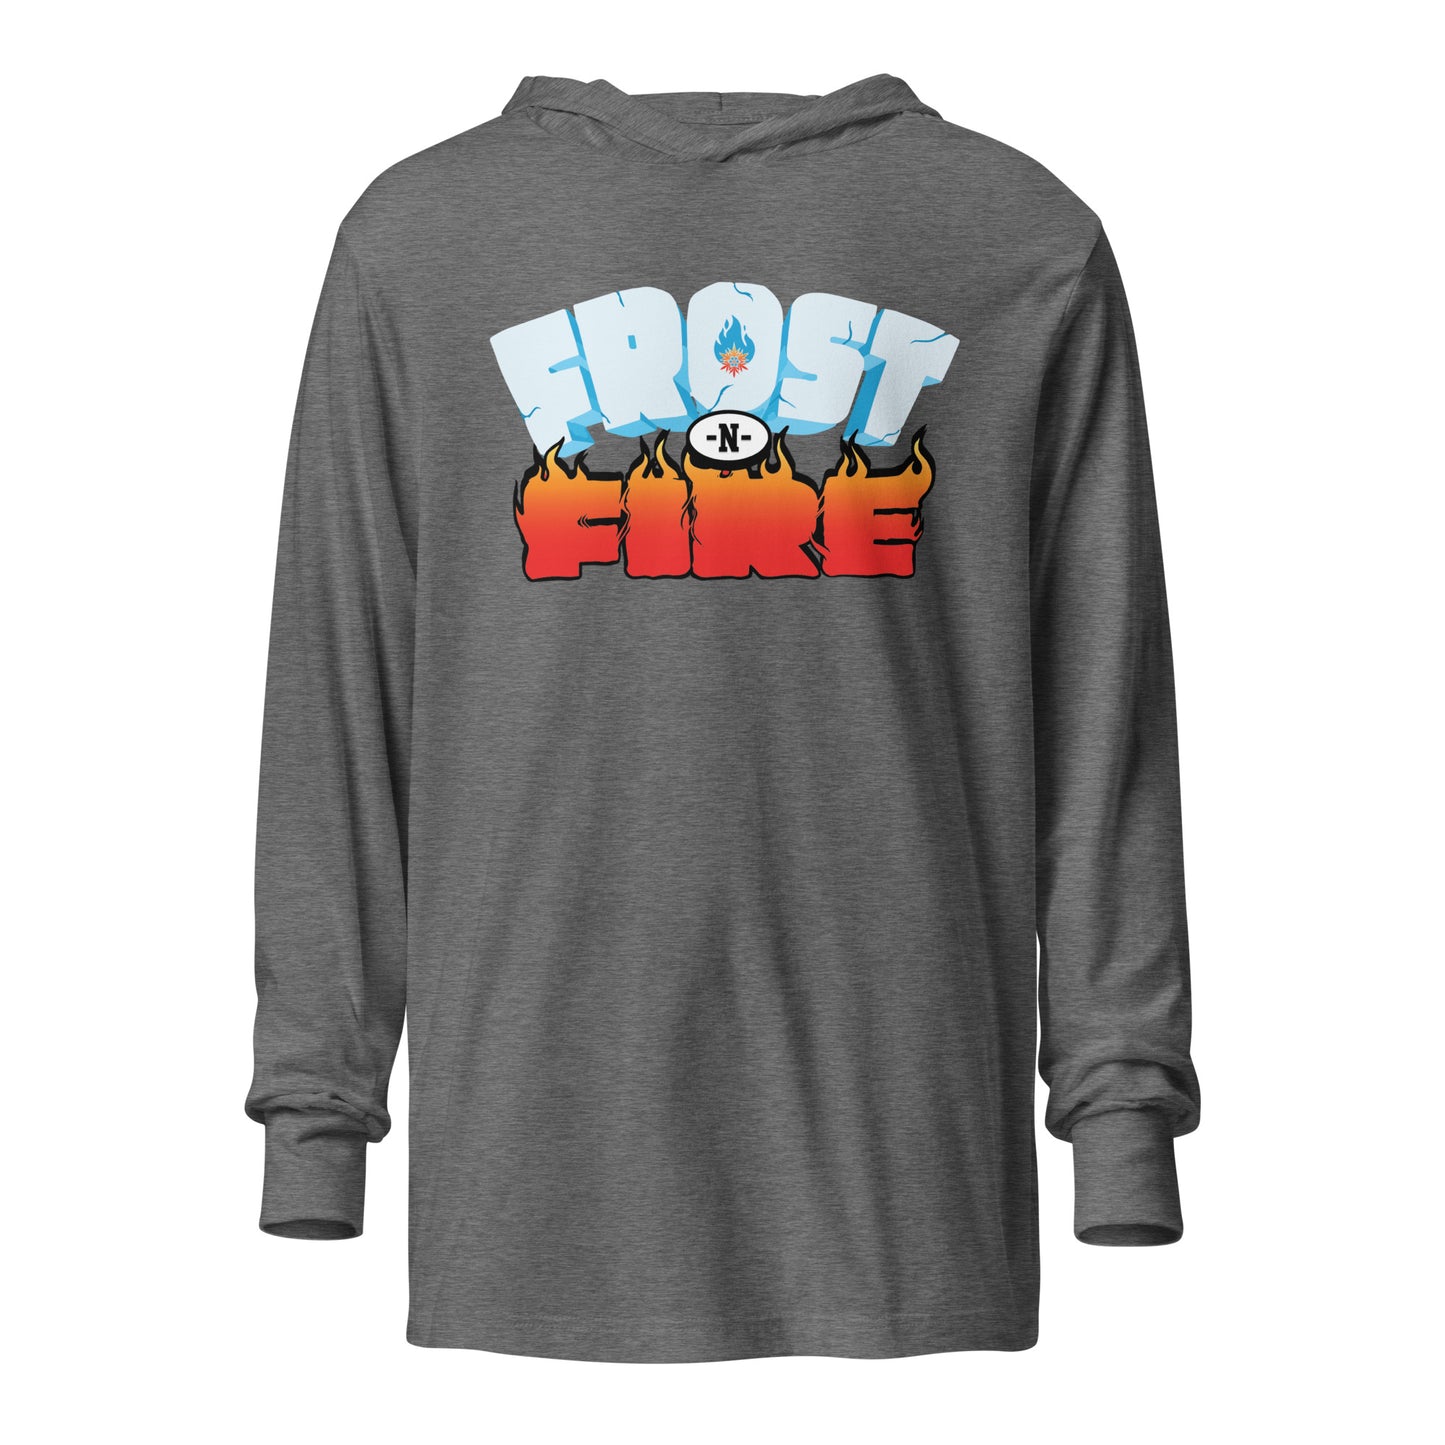 FrostnFire Hooded Long Sleeve